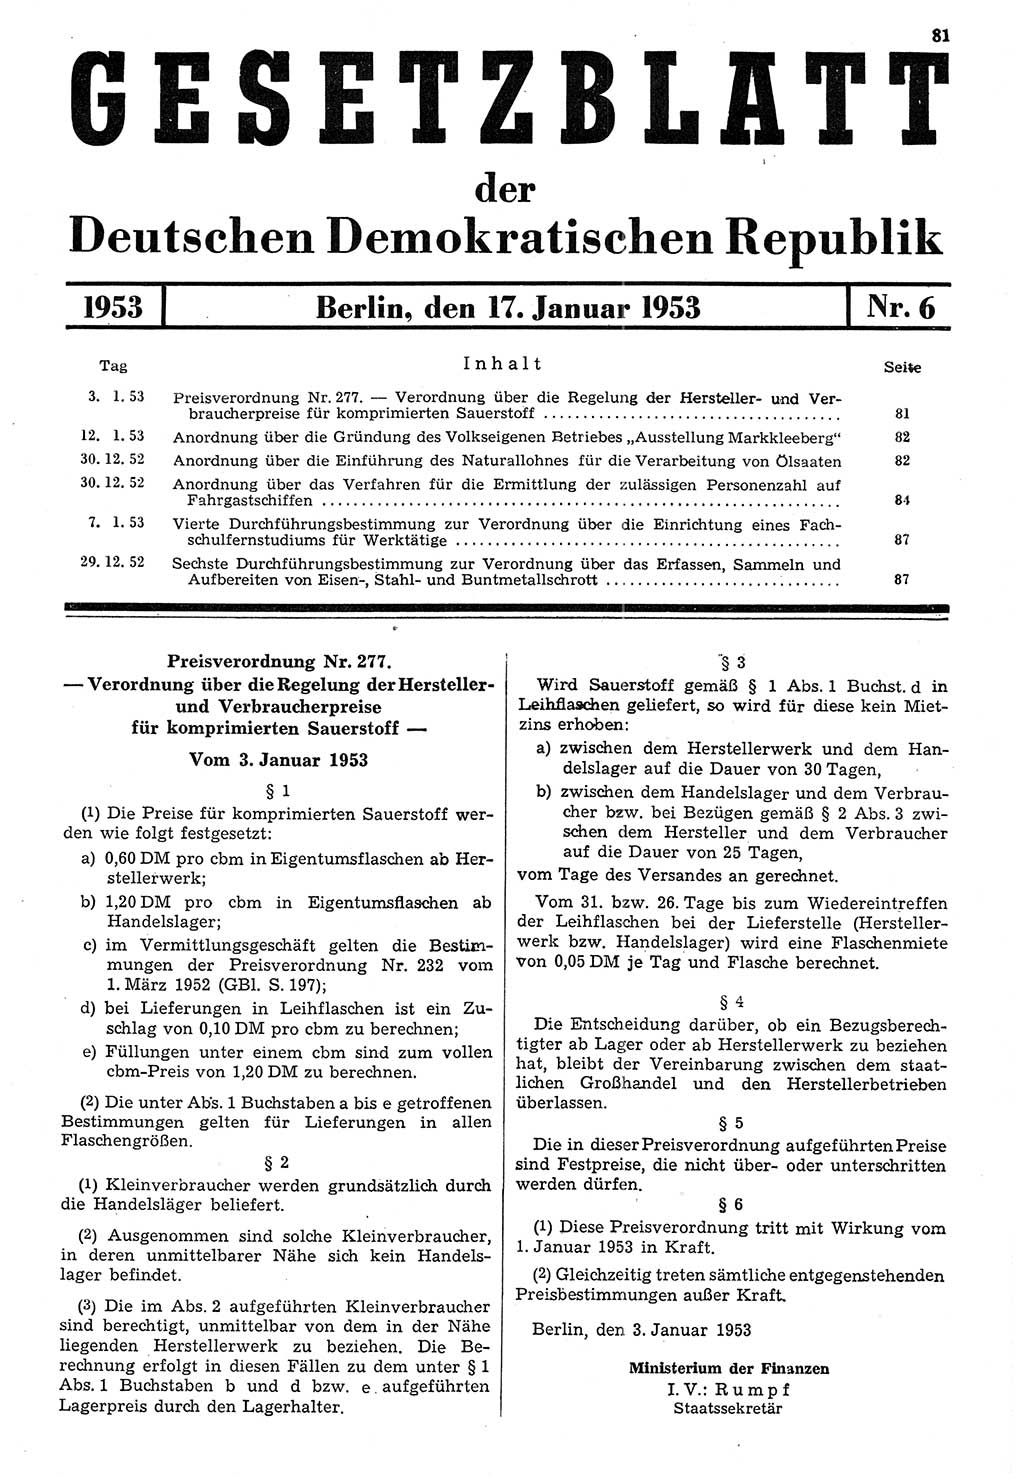 Gesetzblatt (GBl.) der Deutschen Demokratischen Republik (DDR) 1953, Seite 81 (GBl. DDR 1953, S. 81)